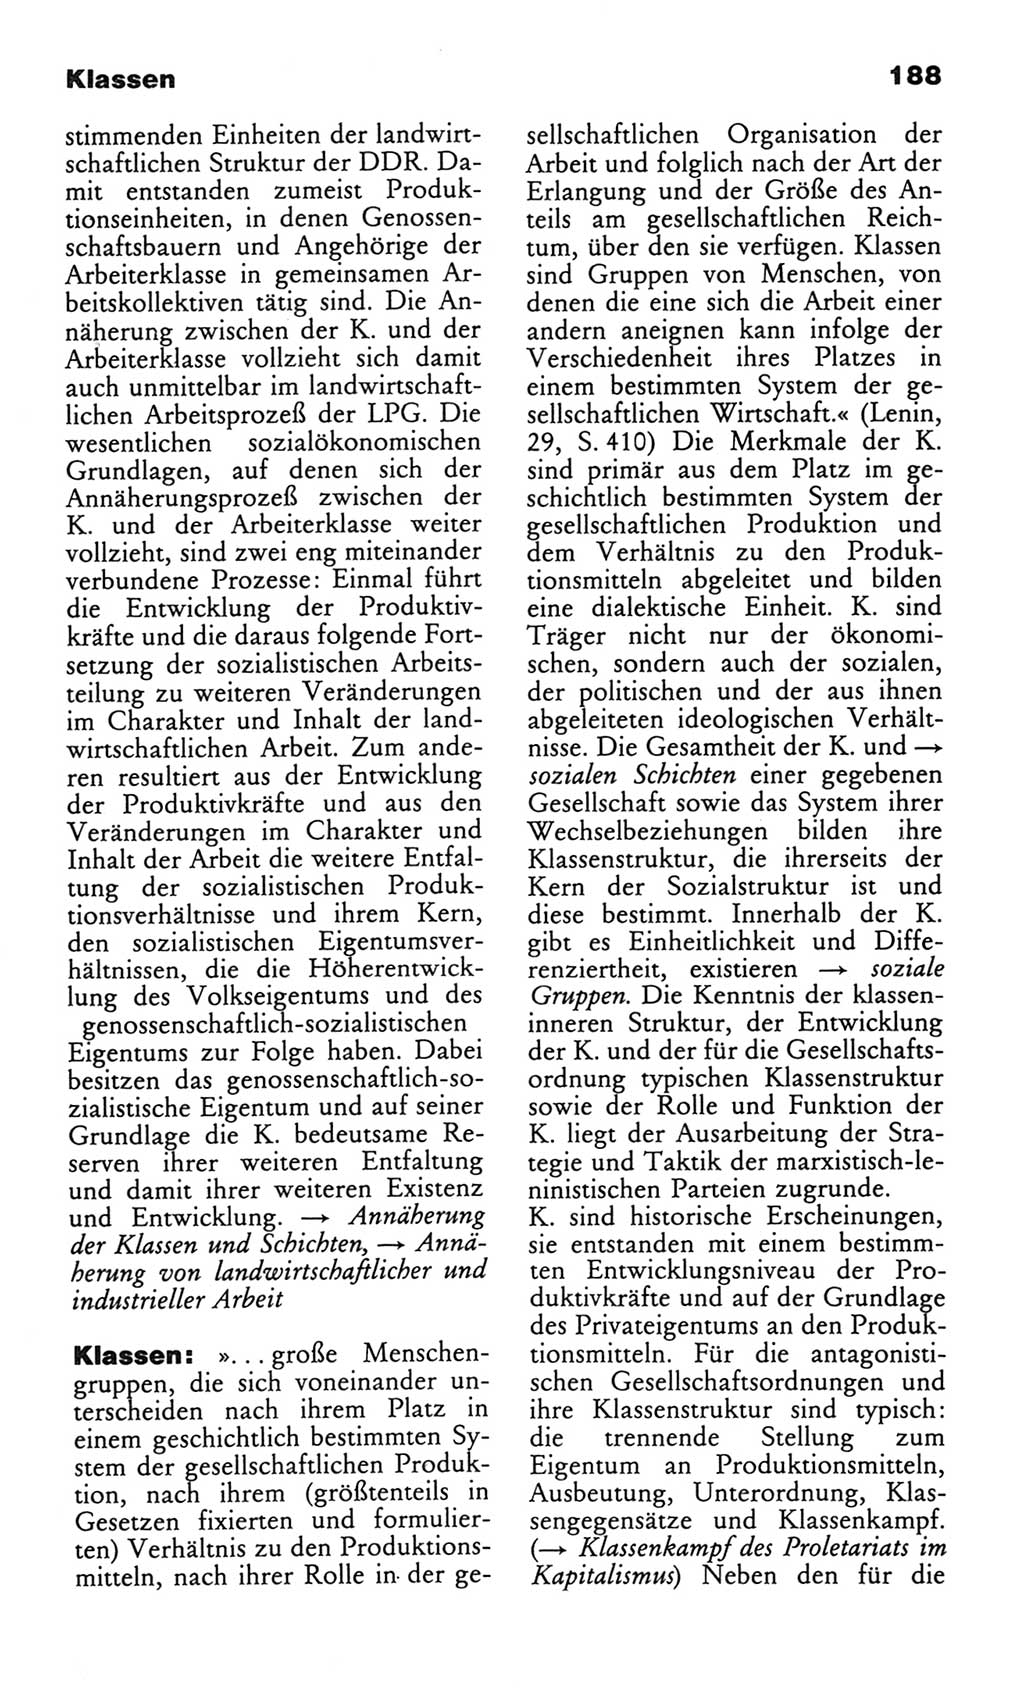 Wörterbuch des wissenschaftlichen Kommunismus [Deutsche Demokratische Republik (DDR)] 1982, Seite 188 (Wb. wiss. Komm. DDR 1982, S. 188)